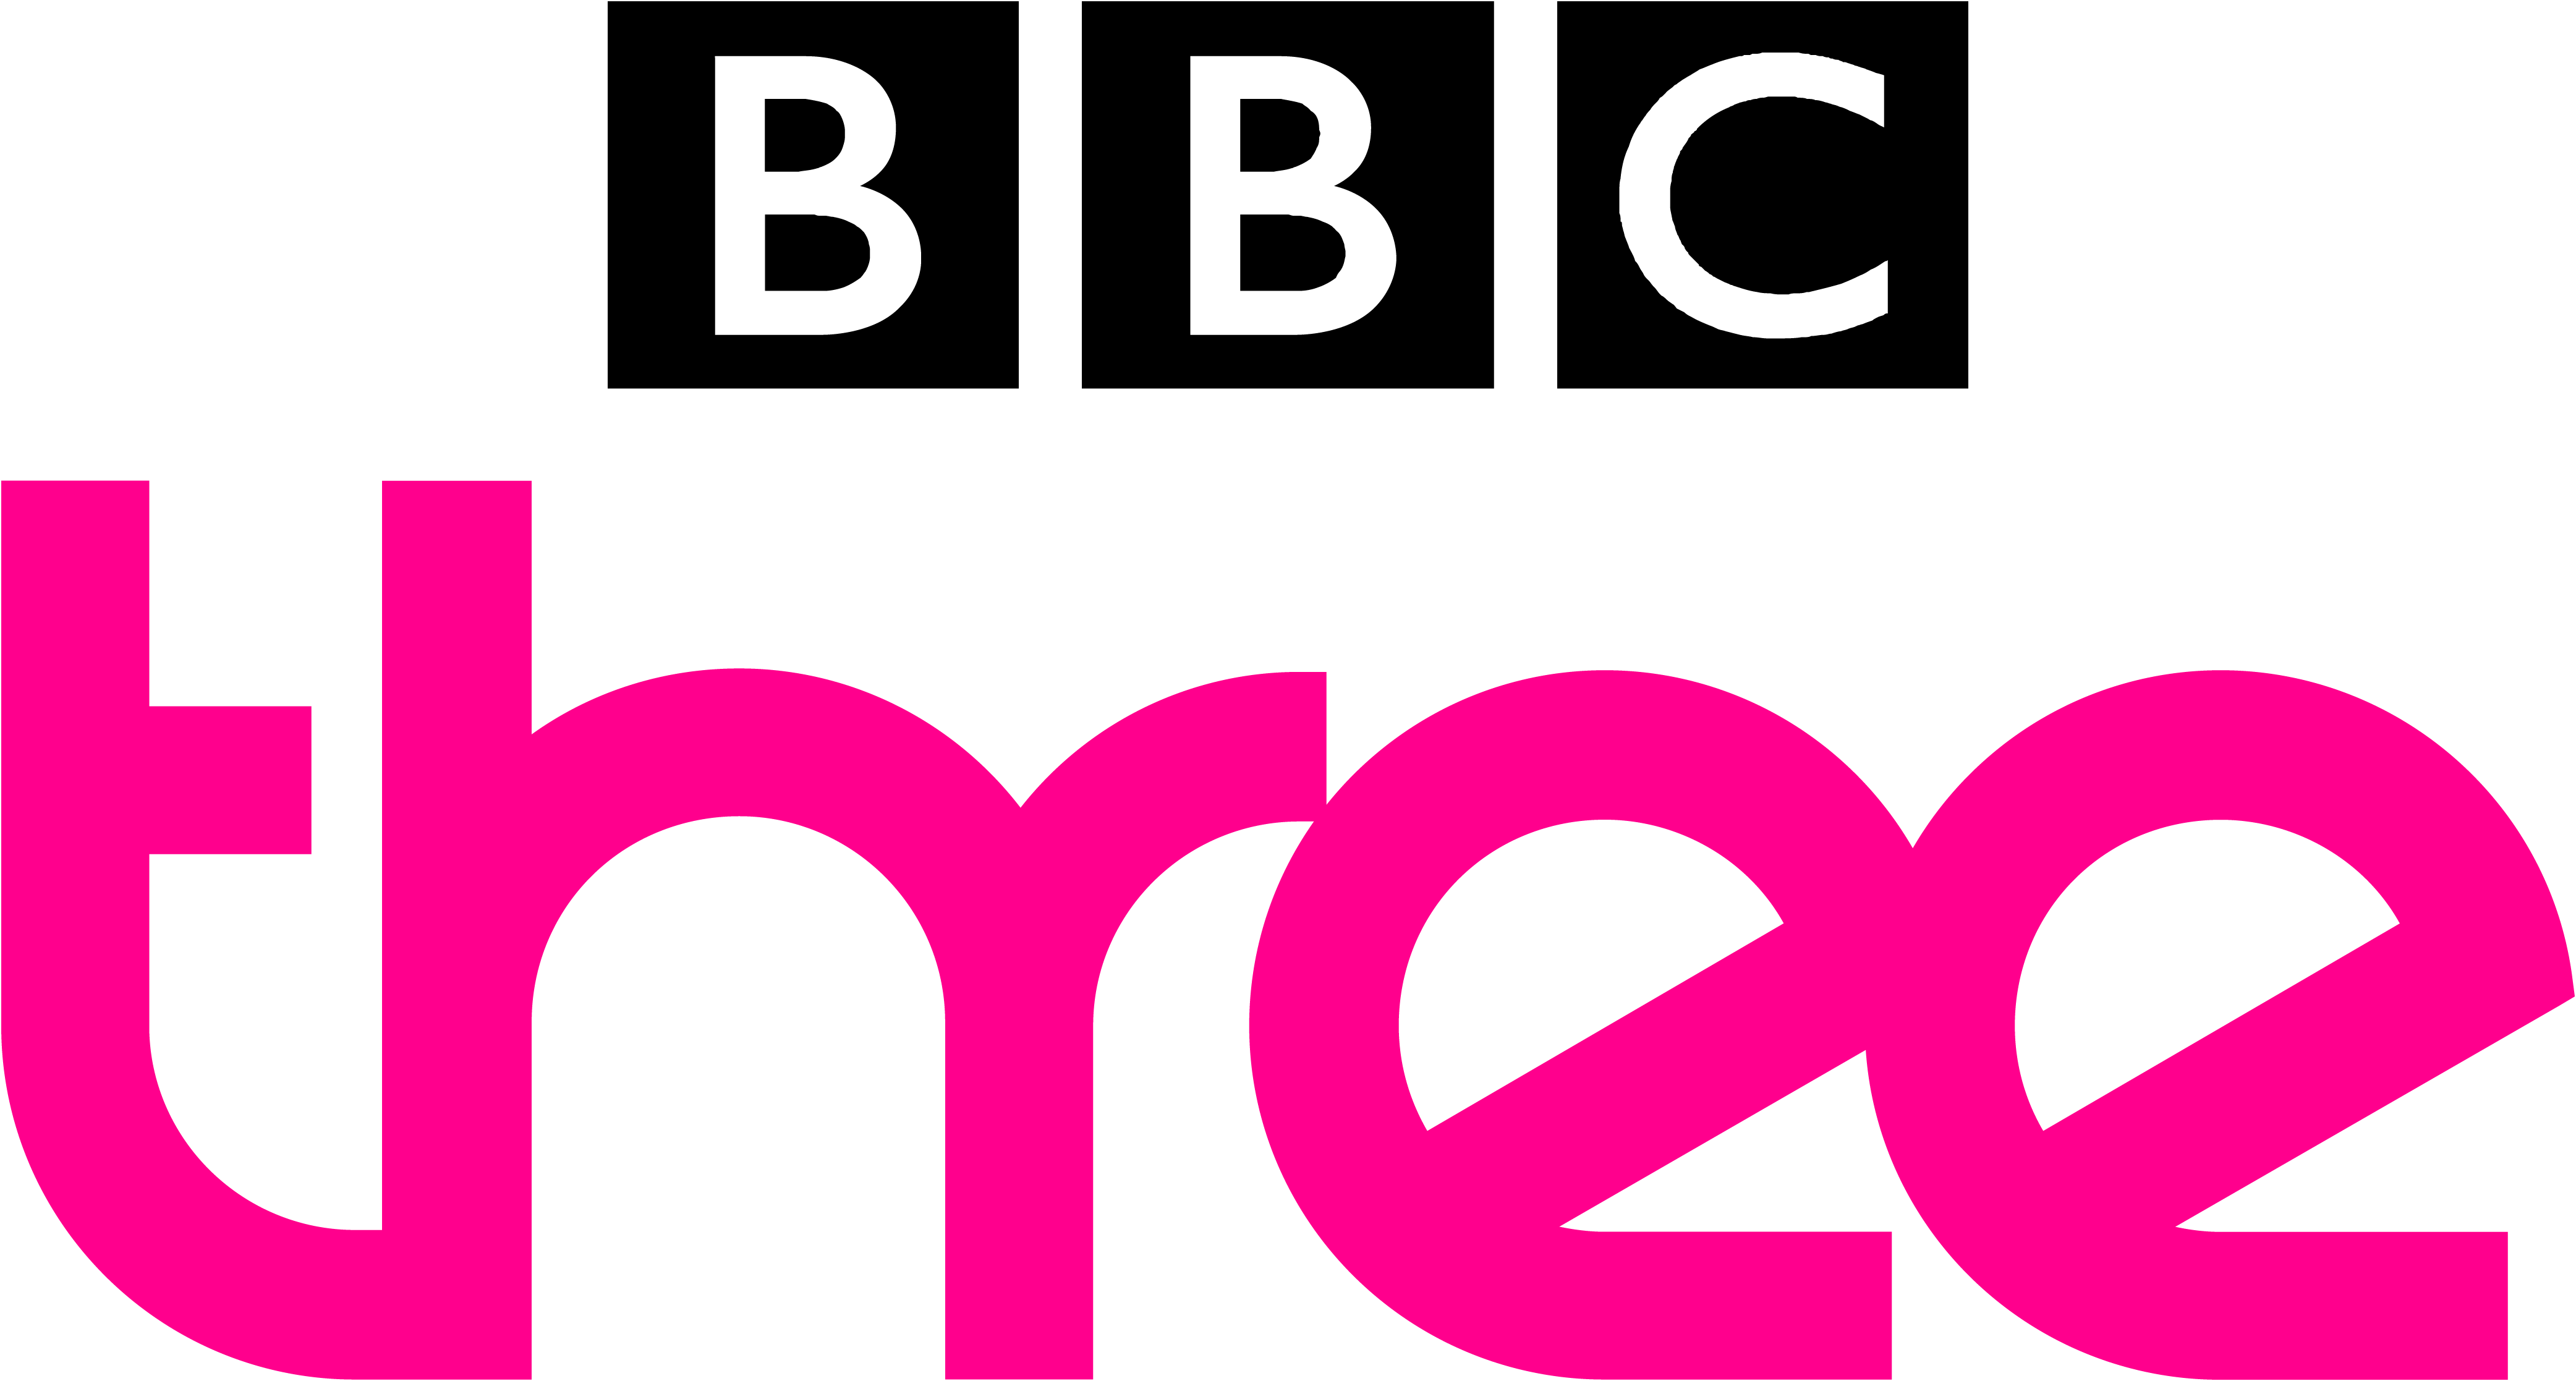 BBC_Three_logo